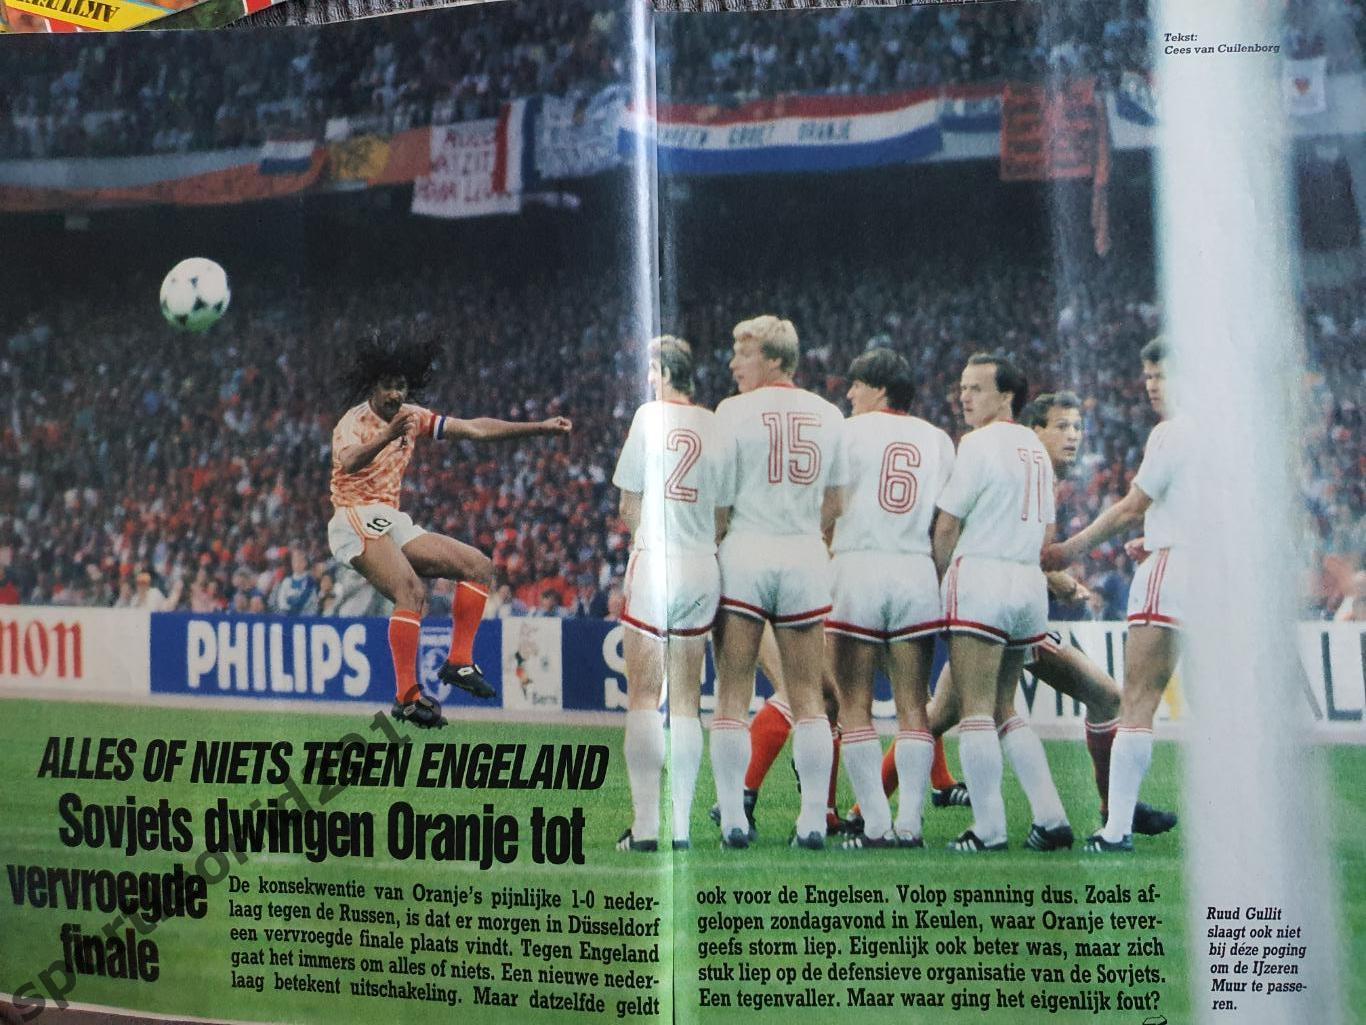 Voetbal International 1988.Годовая подписка.52 номера +4 спецвыпуска к Евро-88.8 7